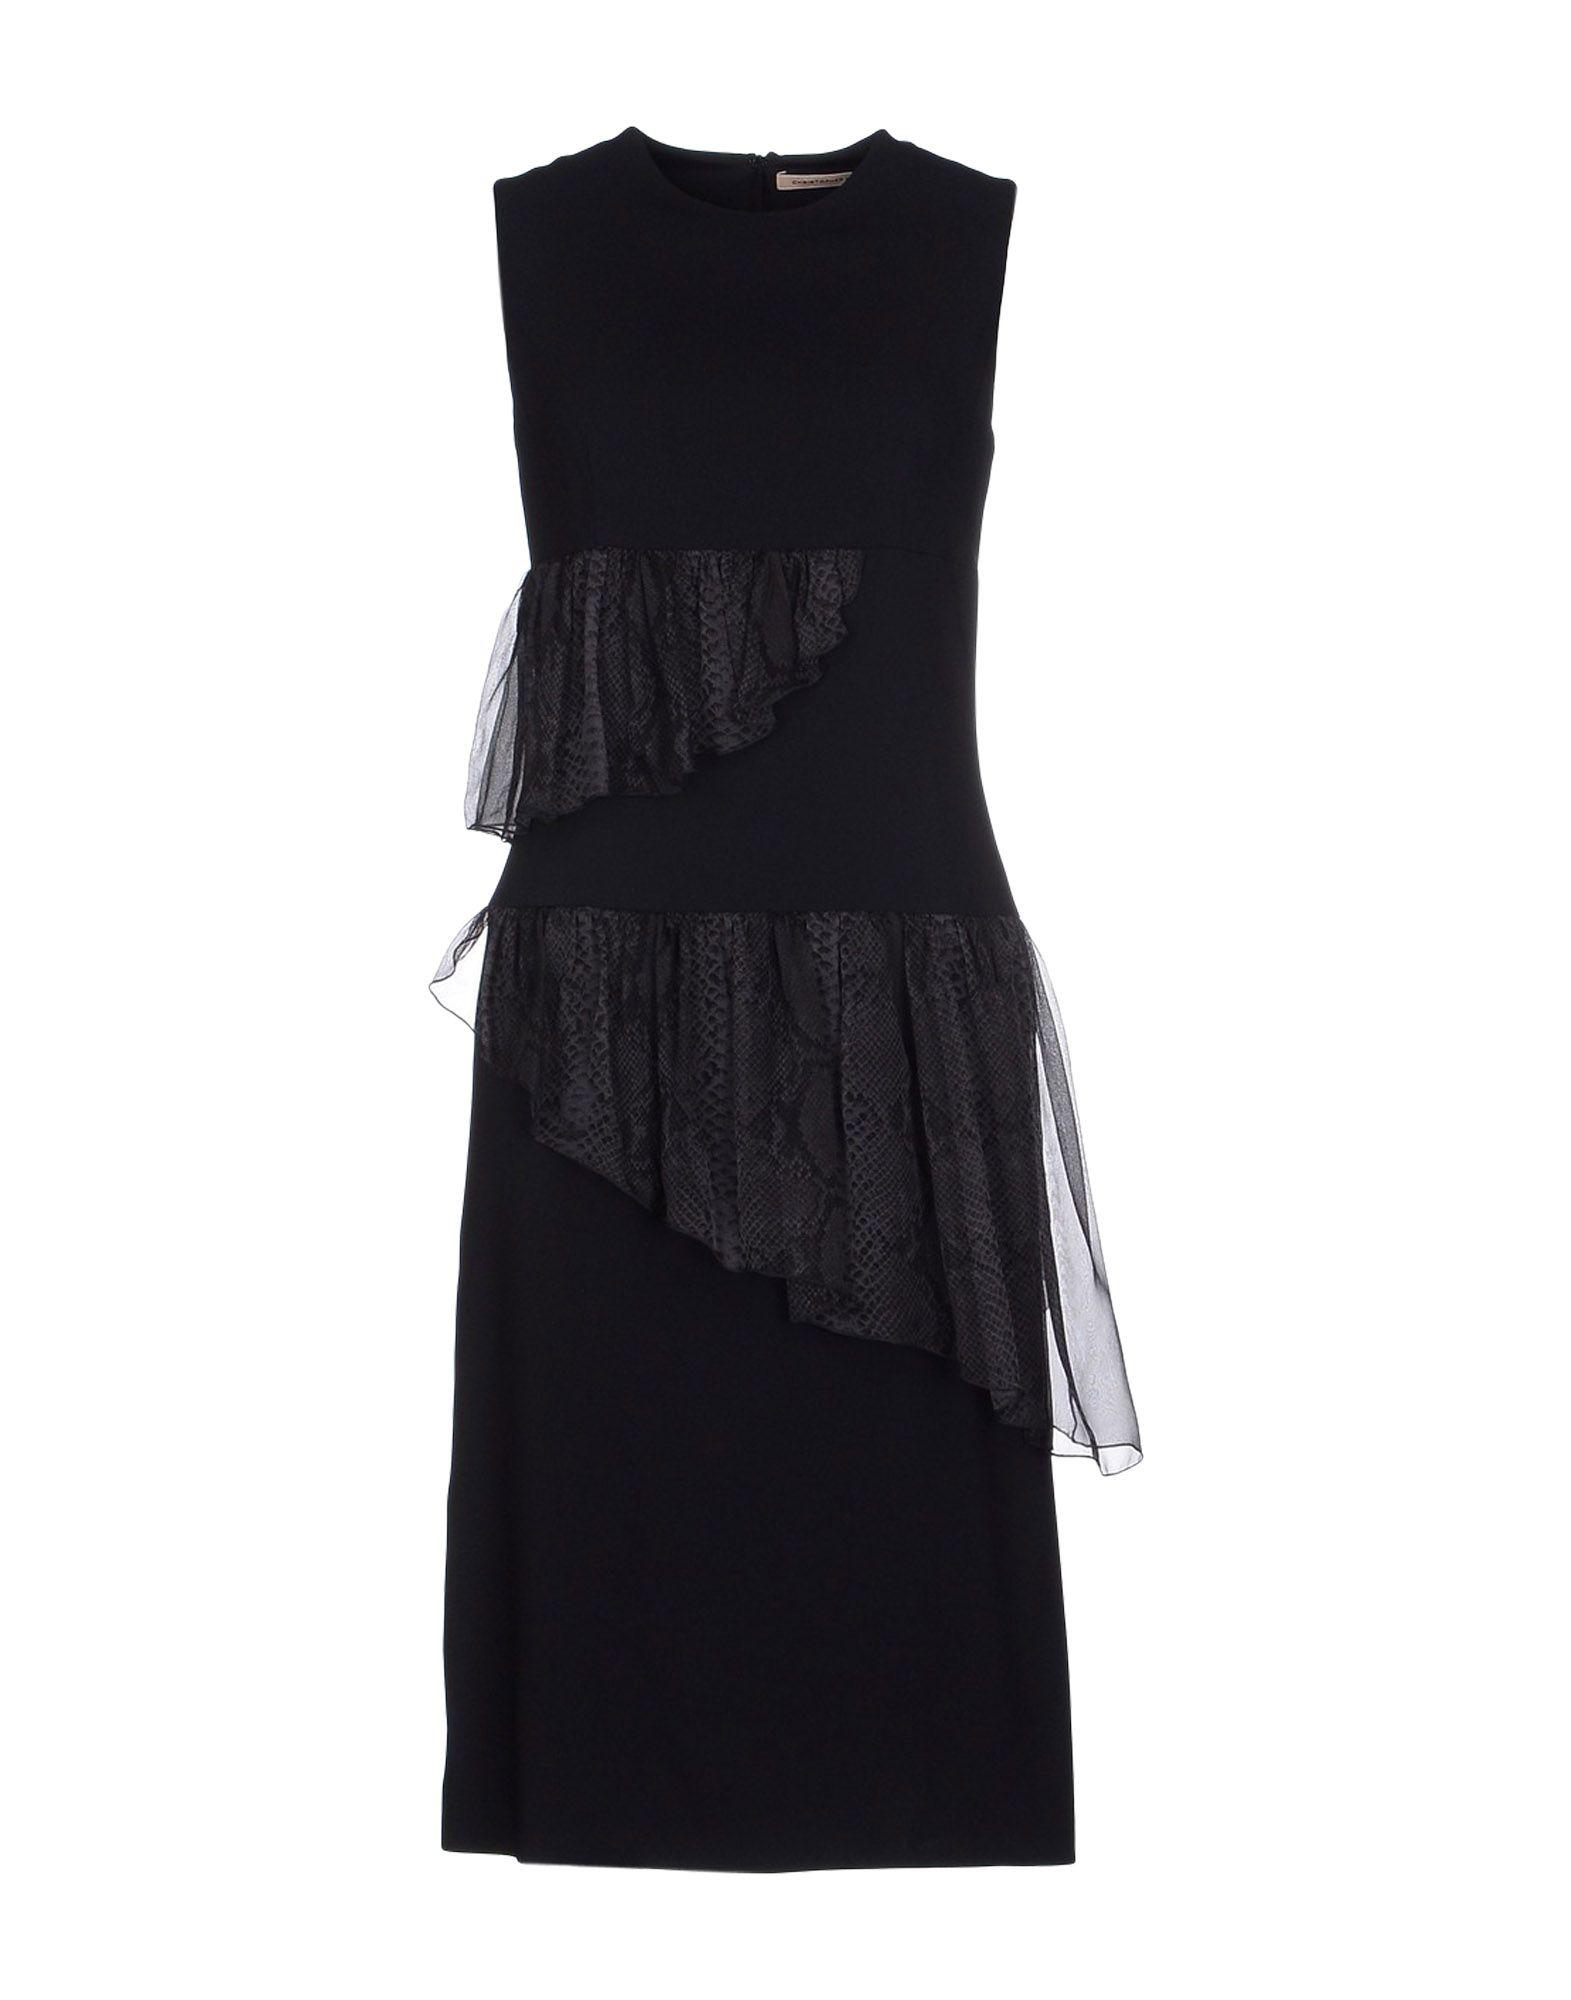 Lyst - Christopher Kane Knee-length Dress in Black